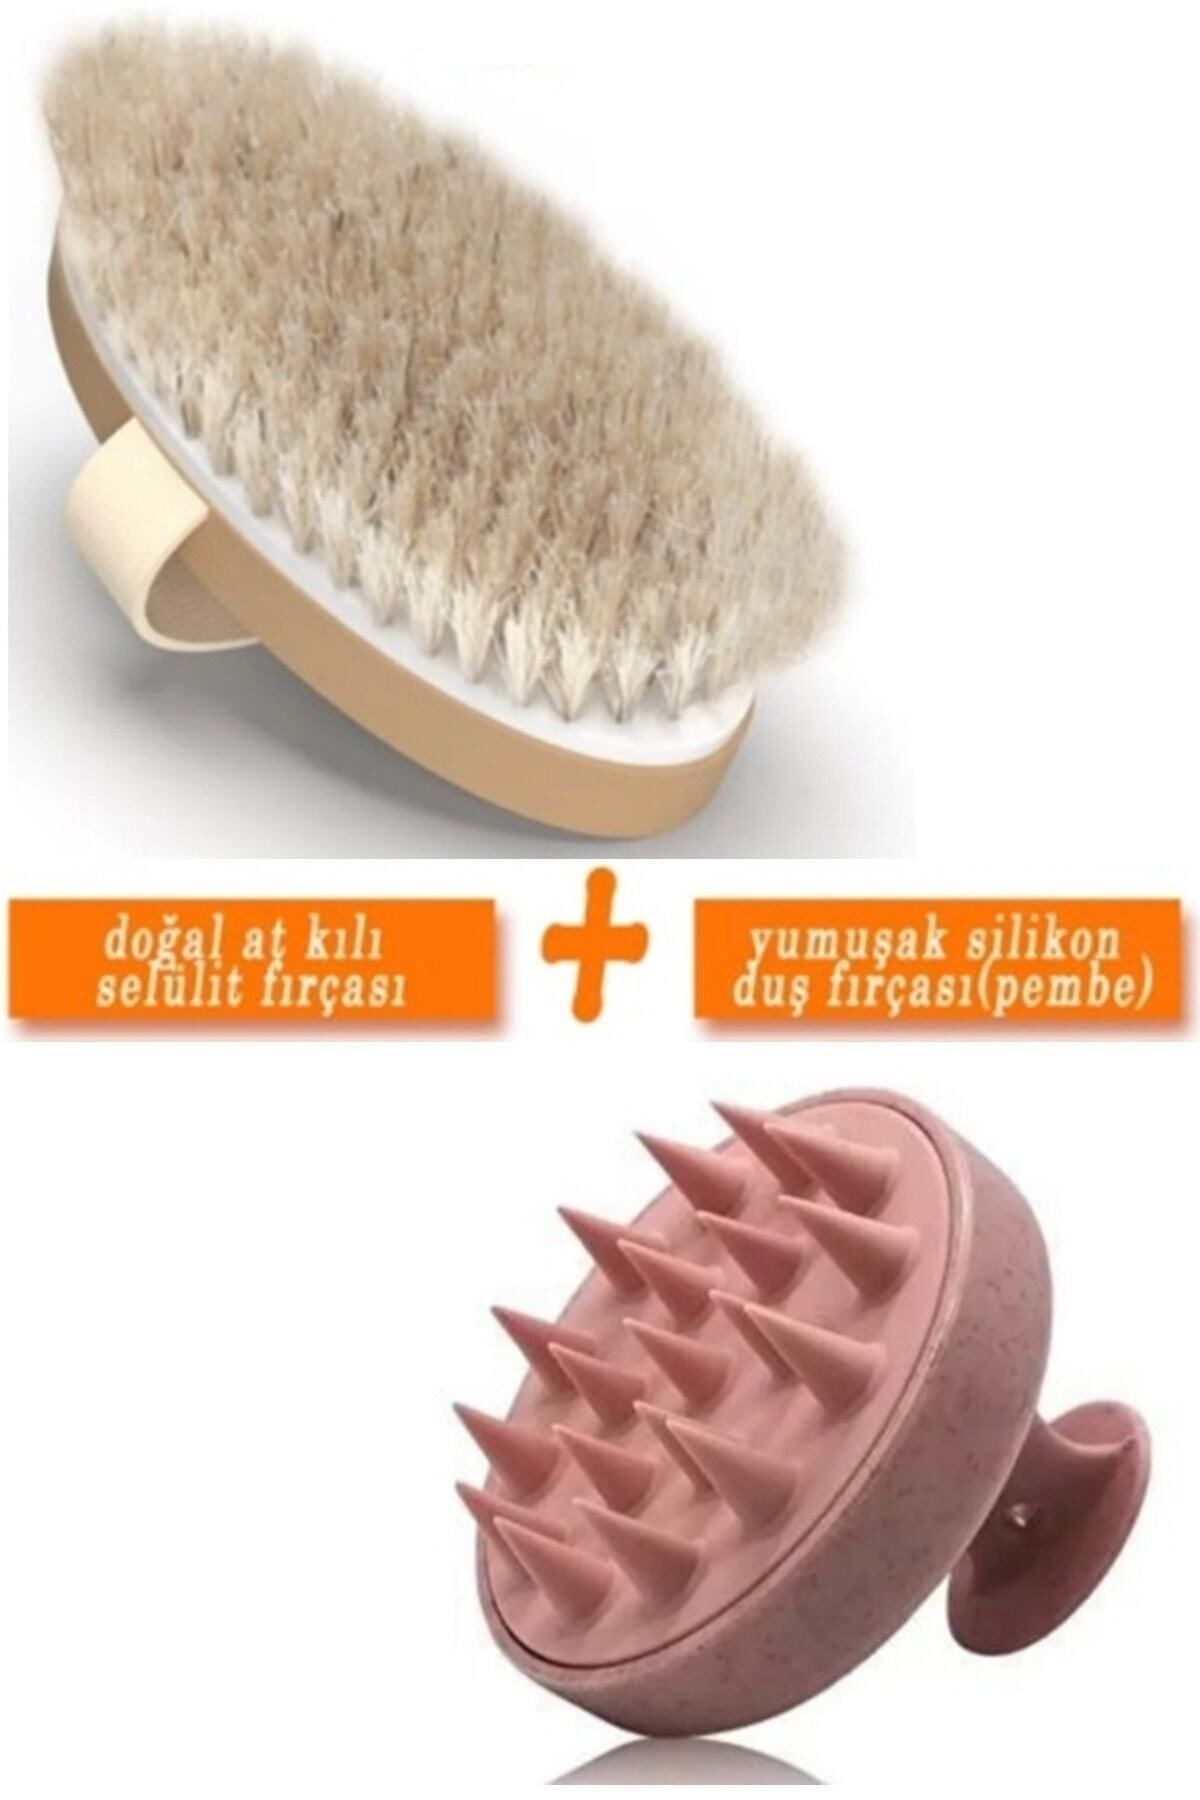 Lusso Shopping 2li Set - %100 Doğal At Kılı Selülit Fırçası + Yumuşak Silikon Saç Derisi Masaj Şampuan Duş Fırçası